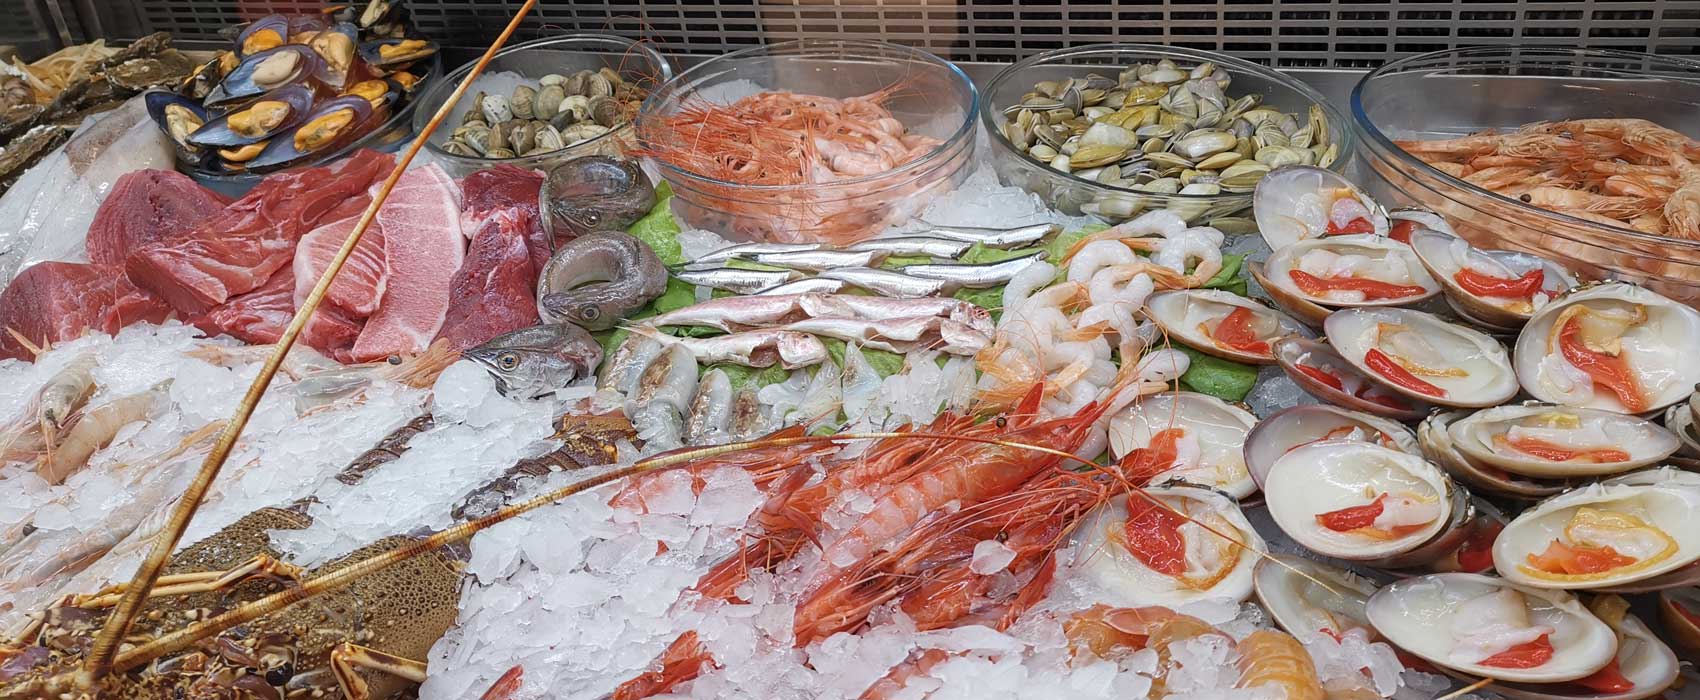 Fisch und Meeresfrüchte gehören zu den alltäglichen Nahrungsmitteln der Menschen von Malaga